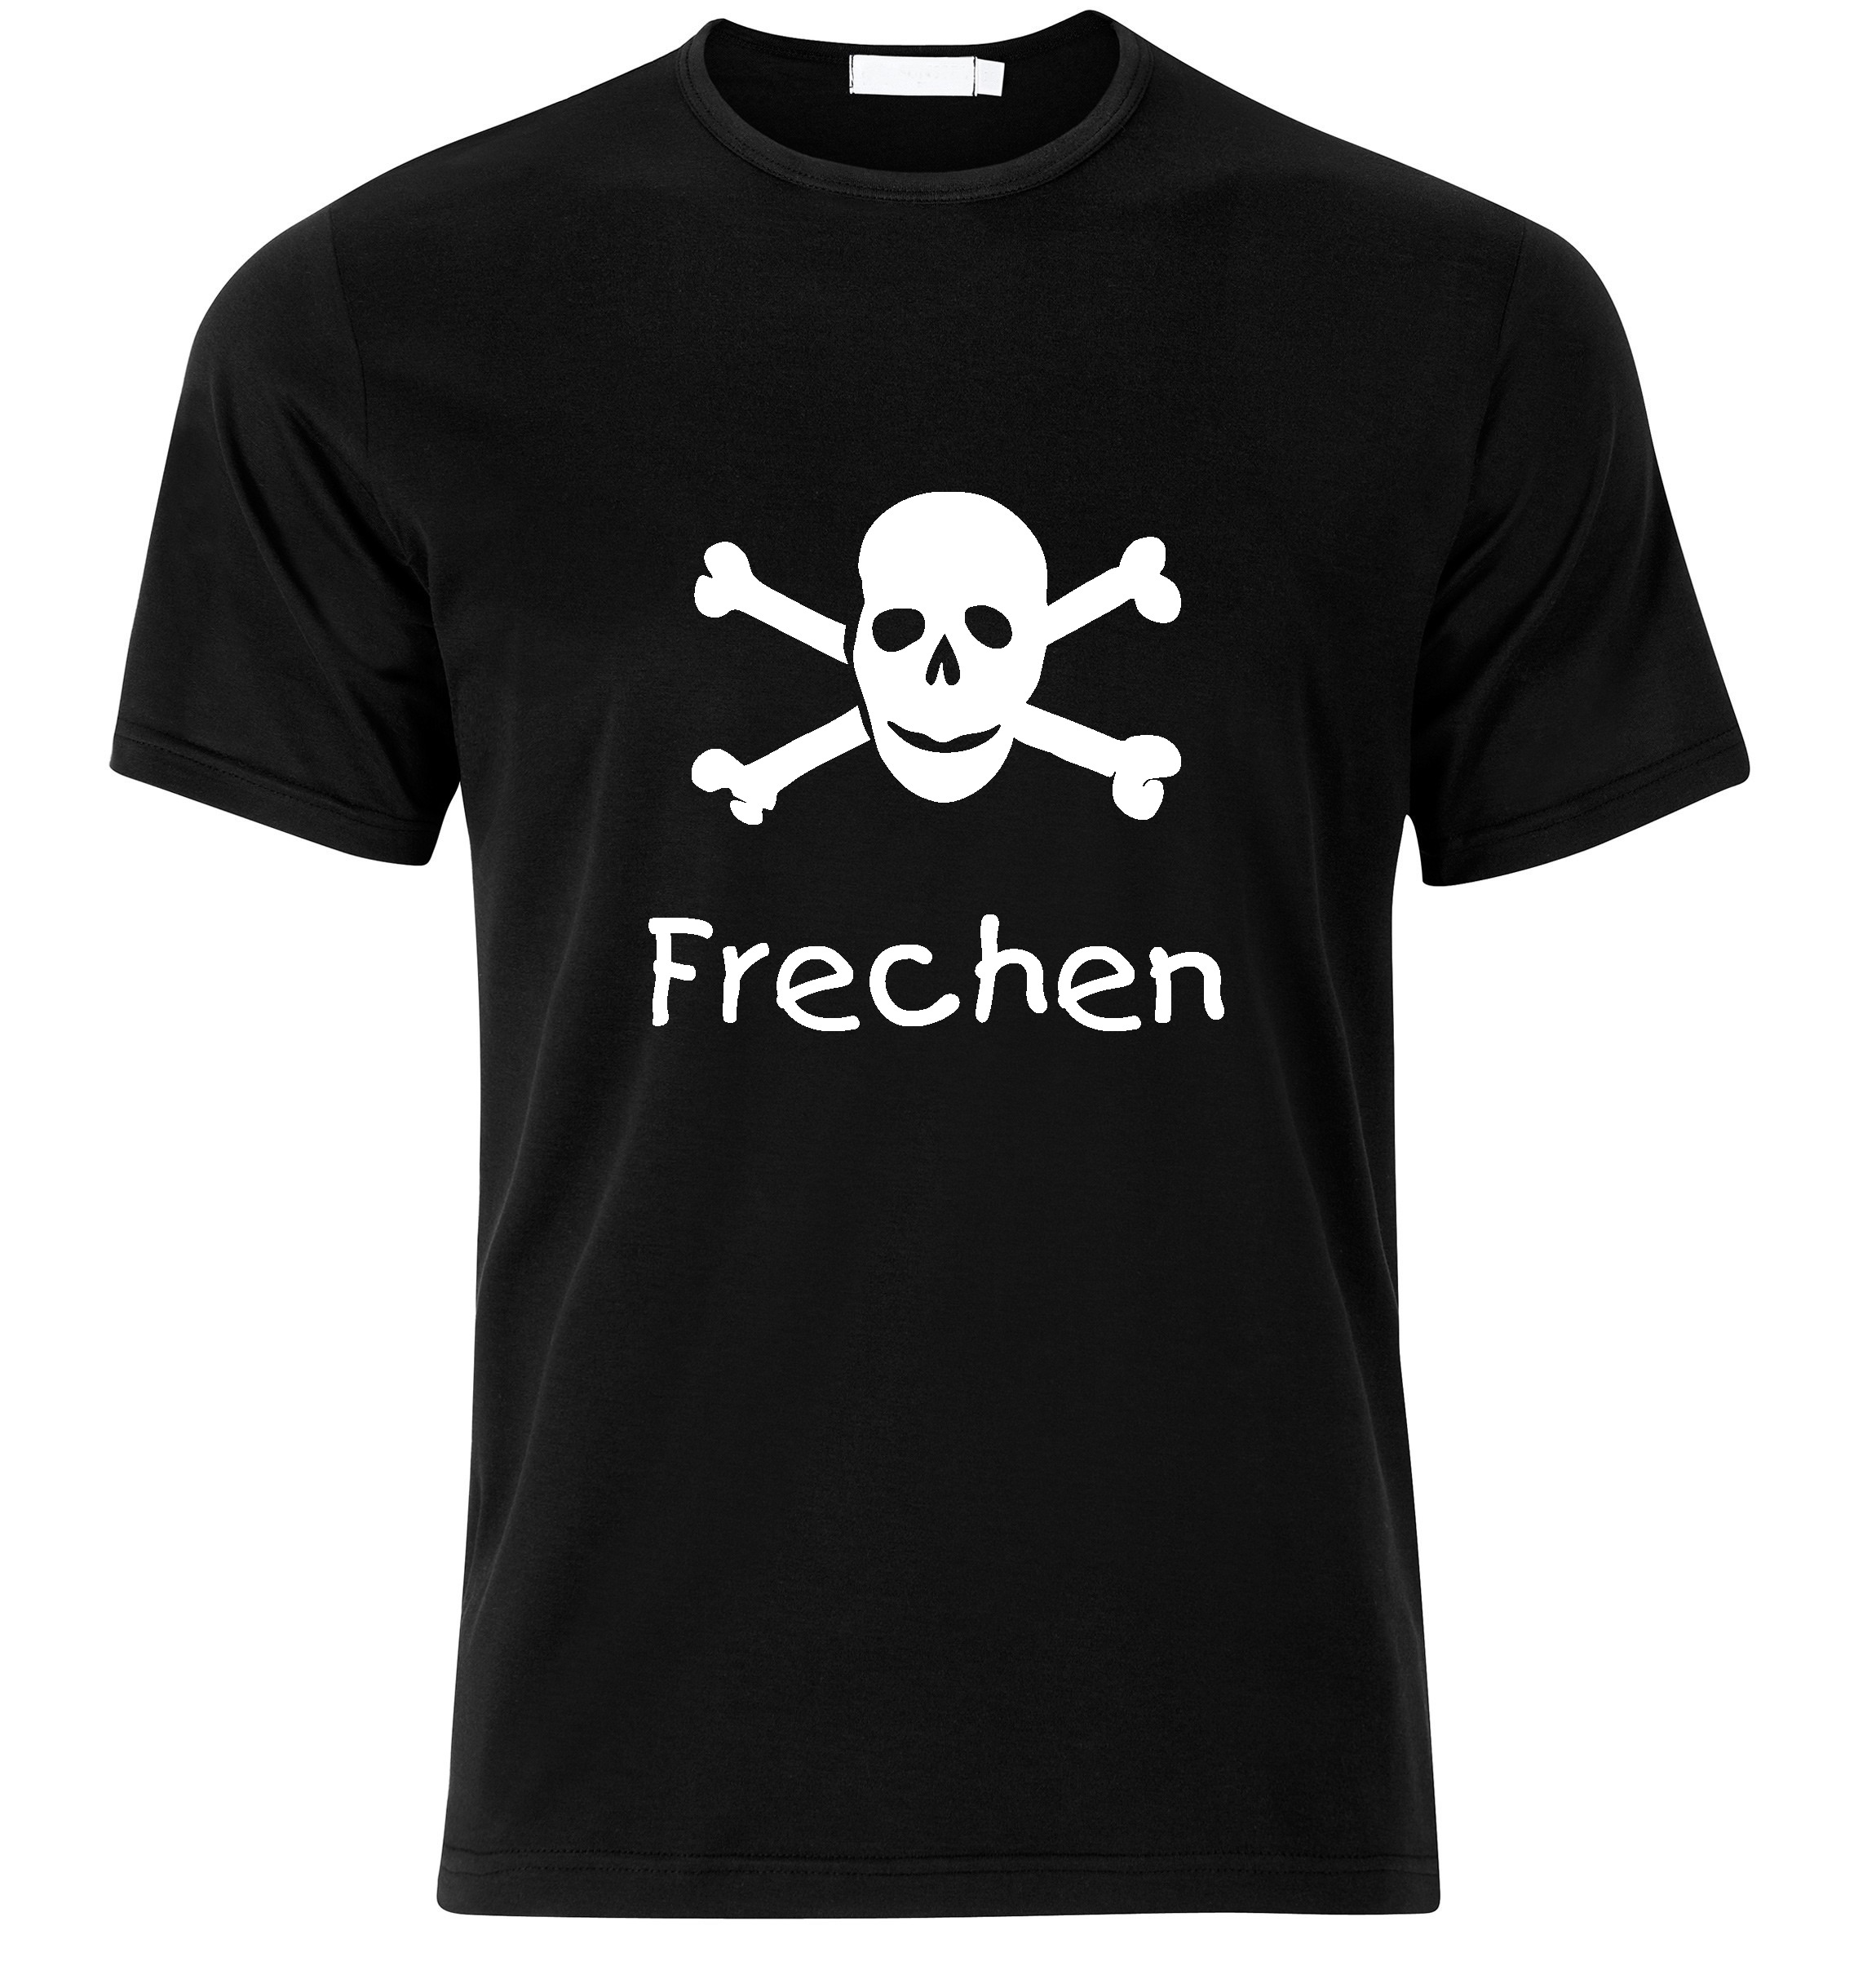 T-Shirt Frechen Jolly Roger, Totenkopf